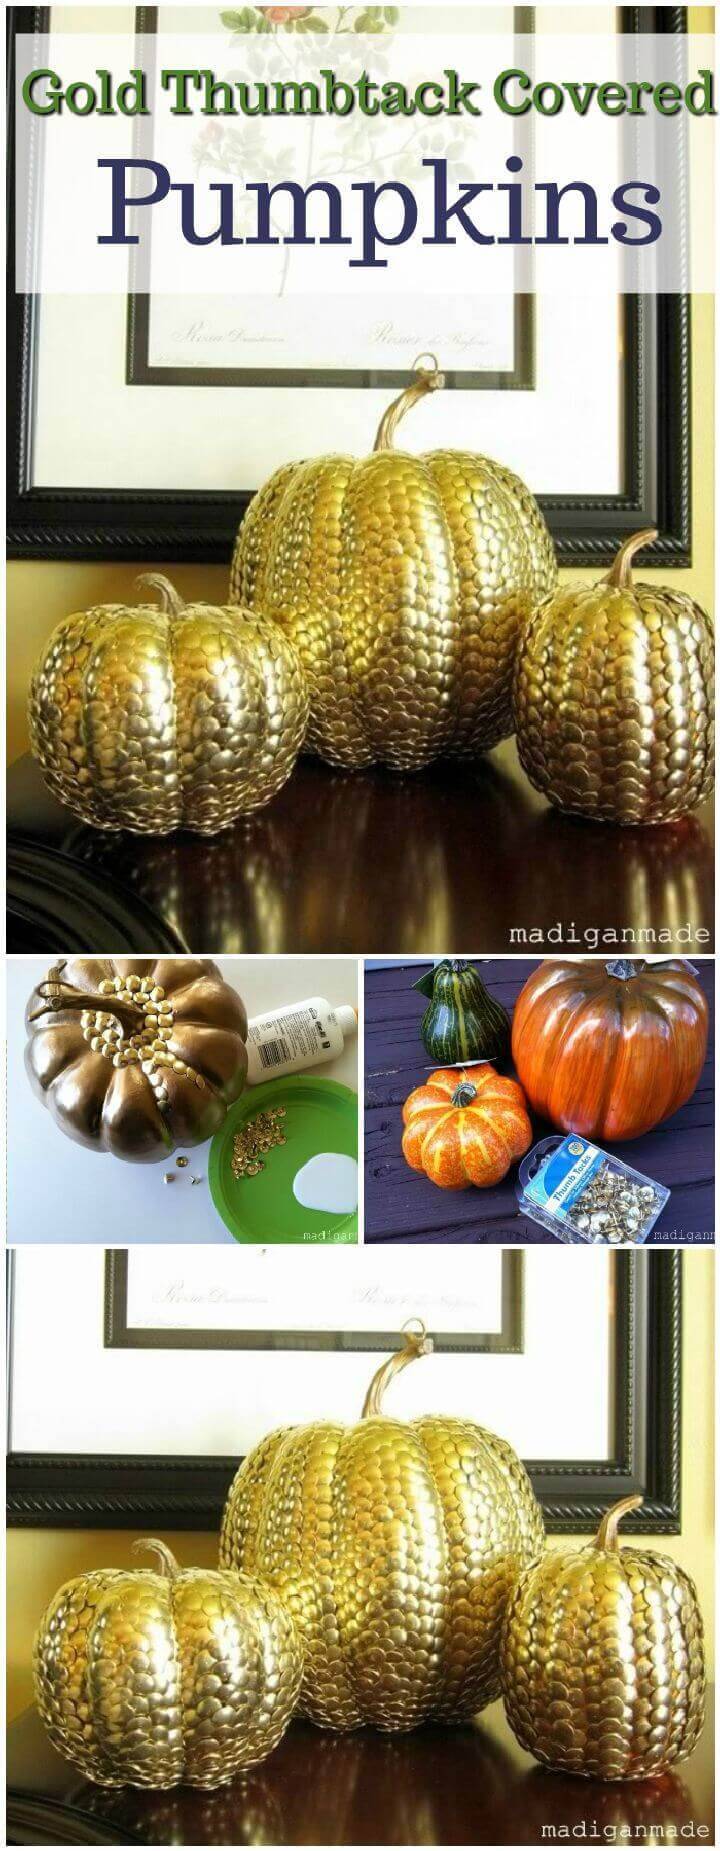 Gold Thumbtack Covered Pumpkins